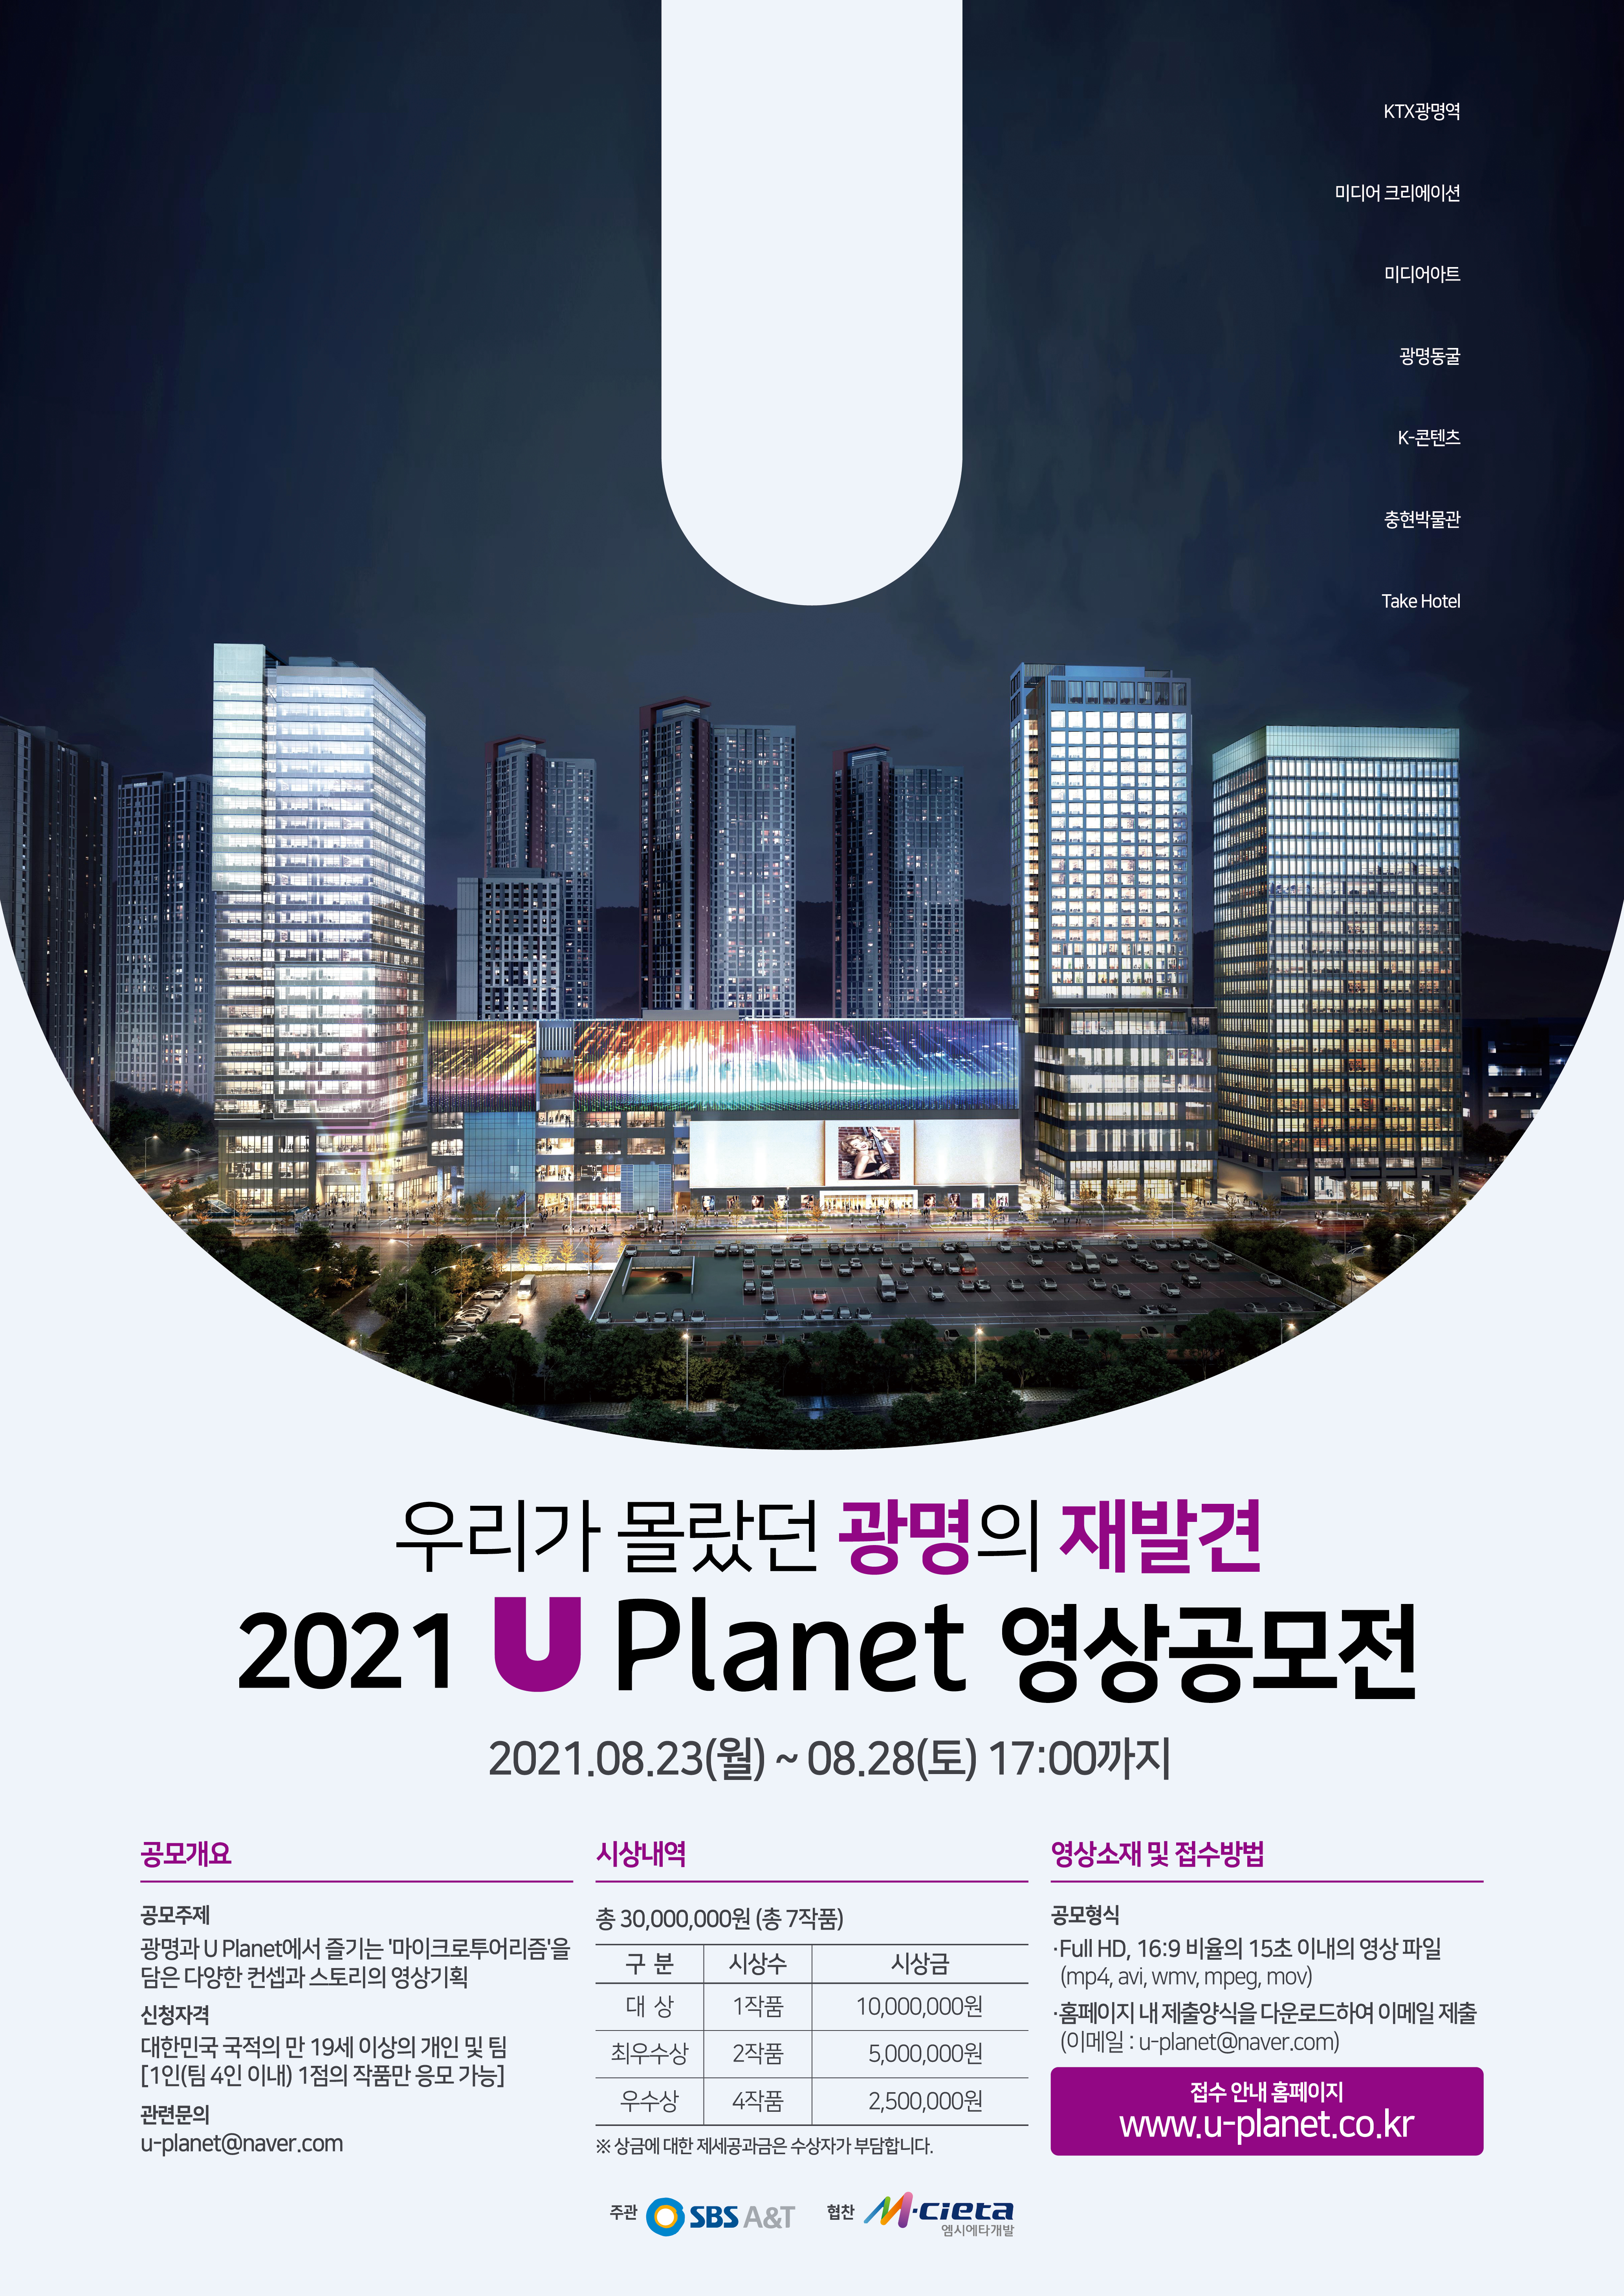 2021년 U Planet 영상 공모전